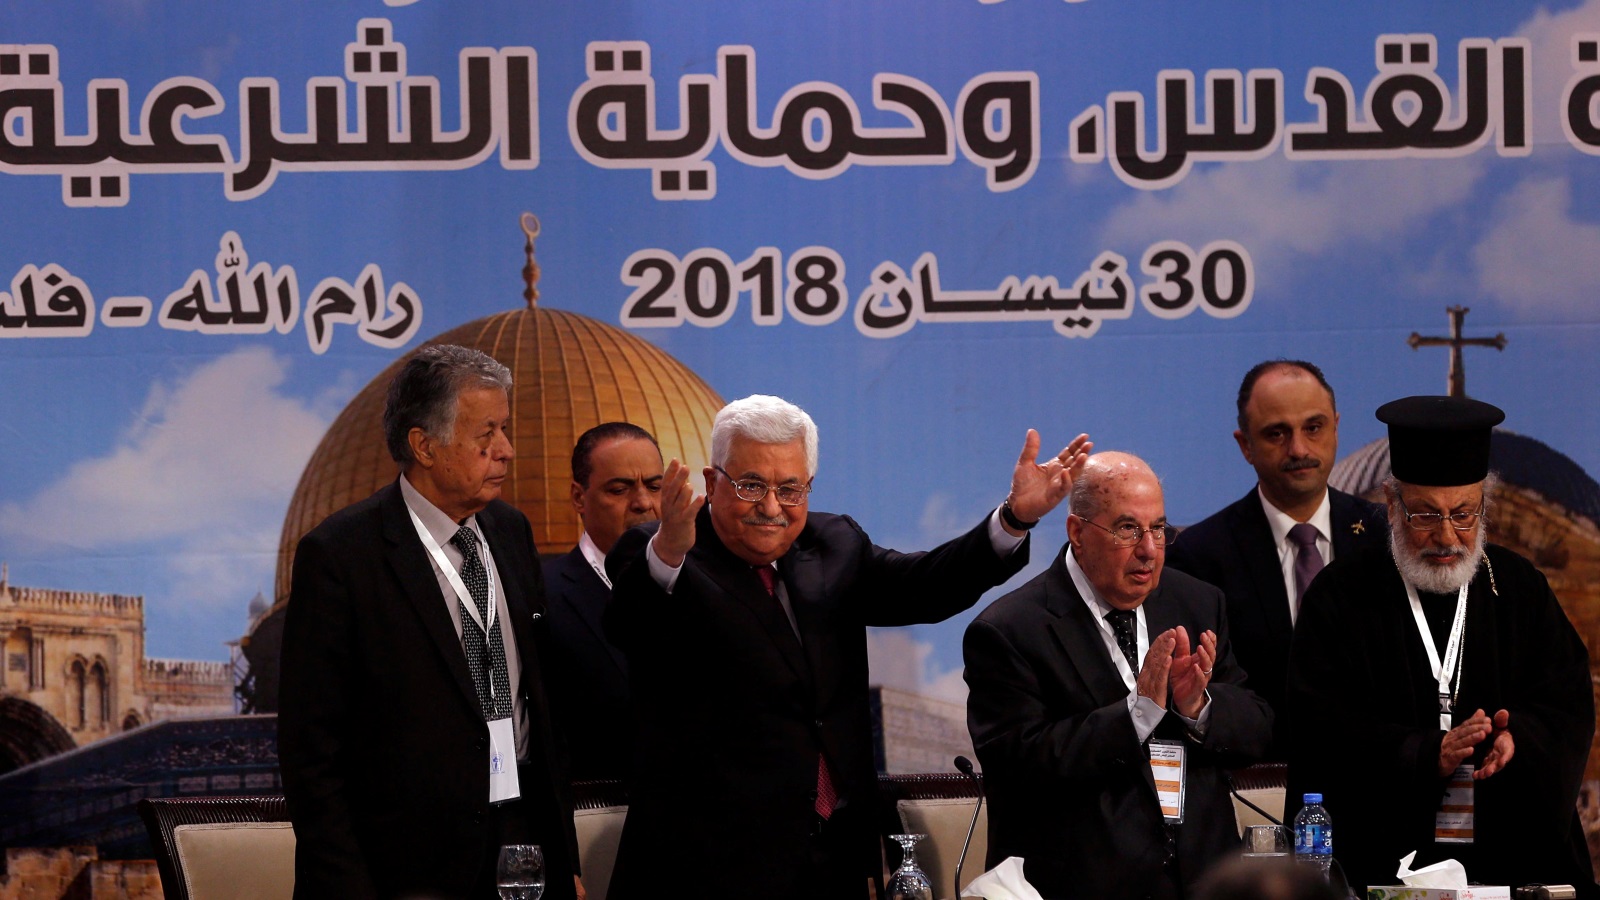 ‪(رويترز)‬ الدورة الأخيرة شهدت إعادة انتخاب الرئيس الفلسطيني محمود عباس رئيسا للجنة التنفيذية لمنظمة التحرير الفلسطينية